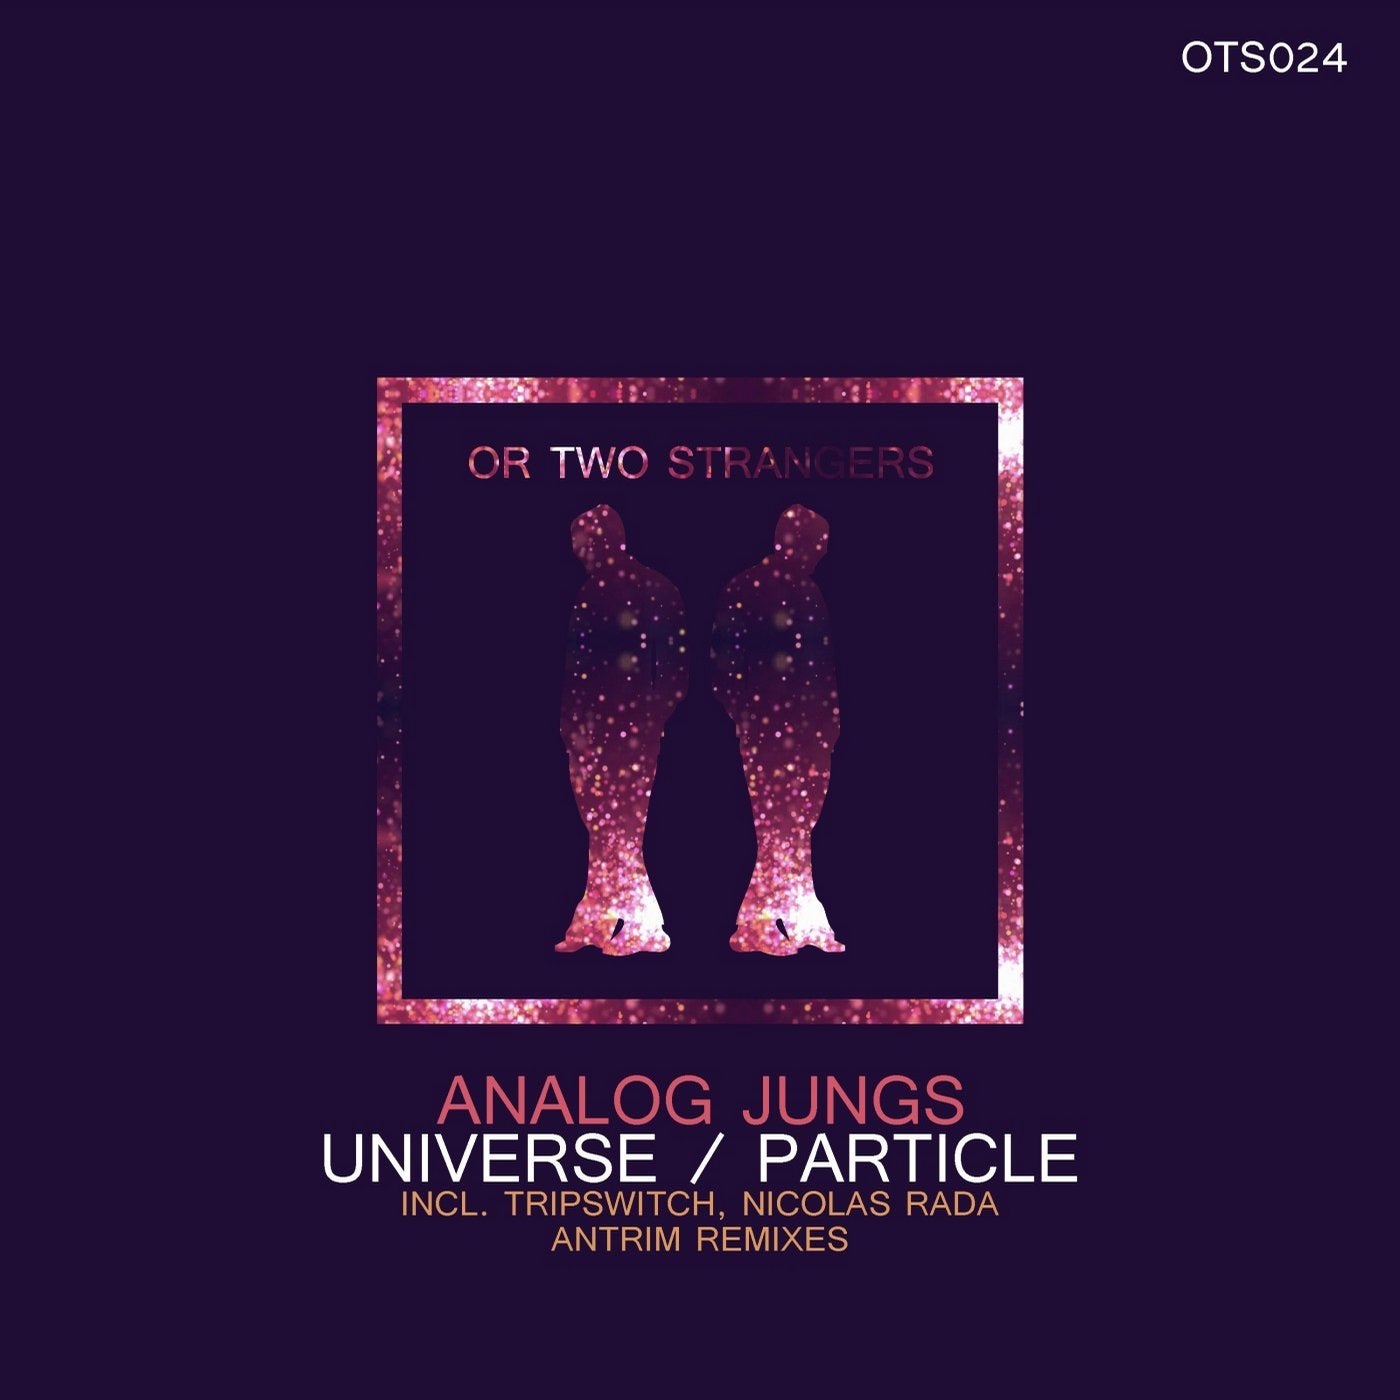 Universe / Particle